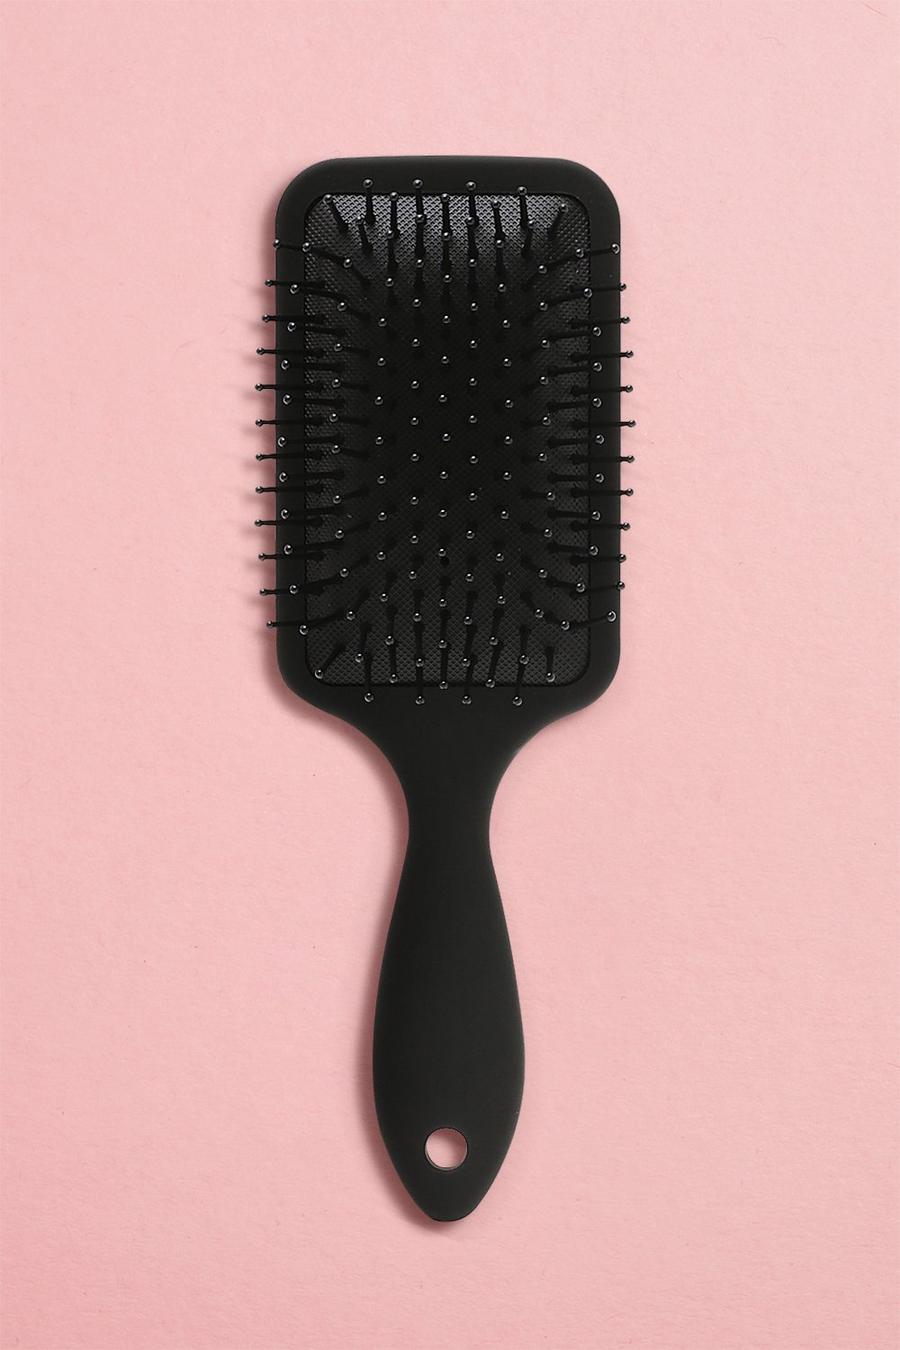 Boohoo Beauty Paddle-Haarbürste, Black